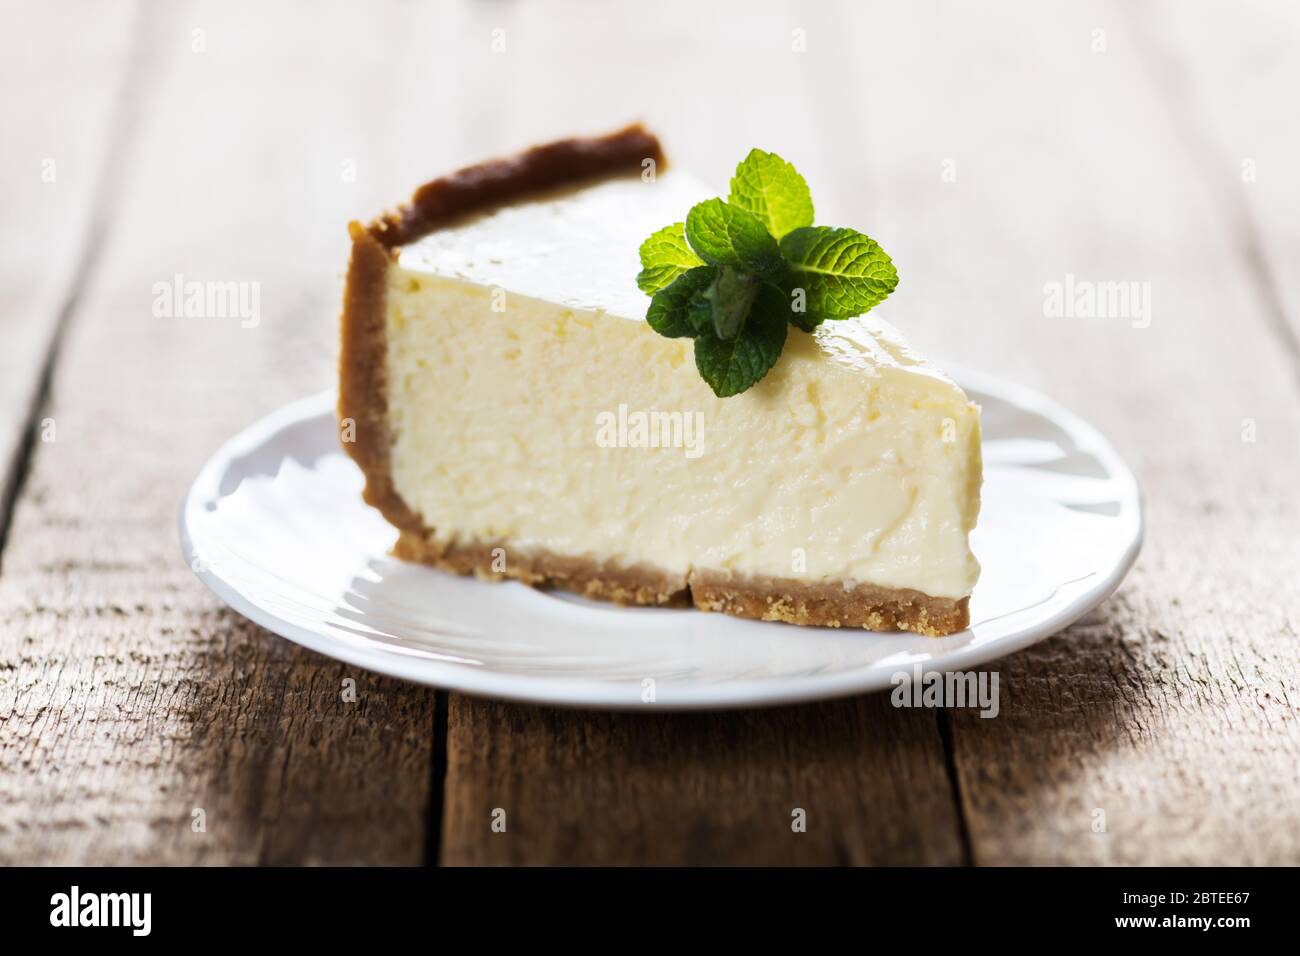 Tranche de cheesecake New York classique avec une branche de menthe sur une plaque sur une table en bois. Le concept de la boulangerie et des desserts aux gâteaux sucrés Banque D'Images